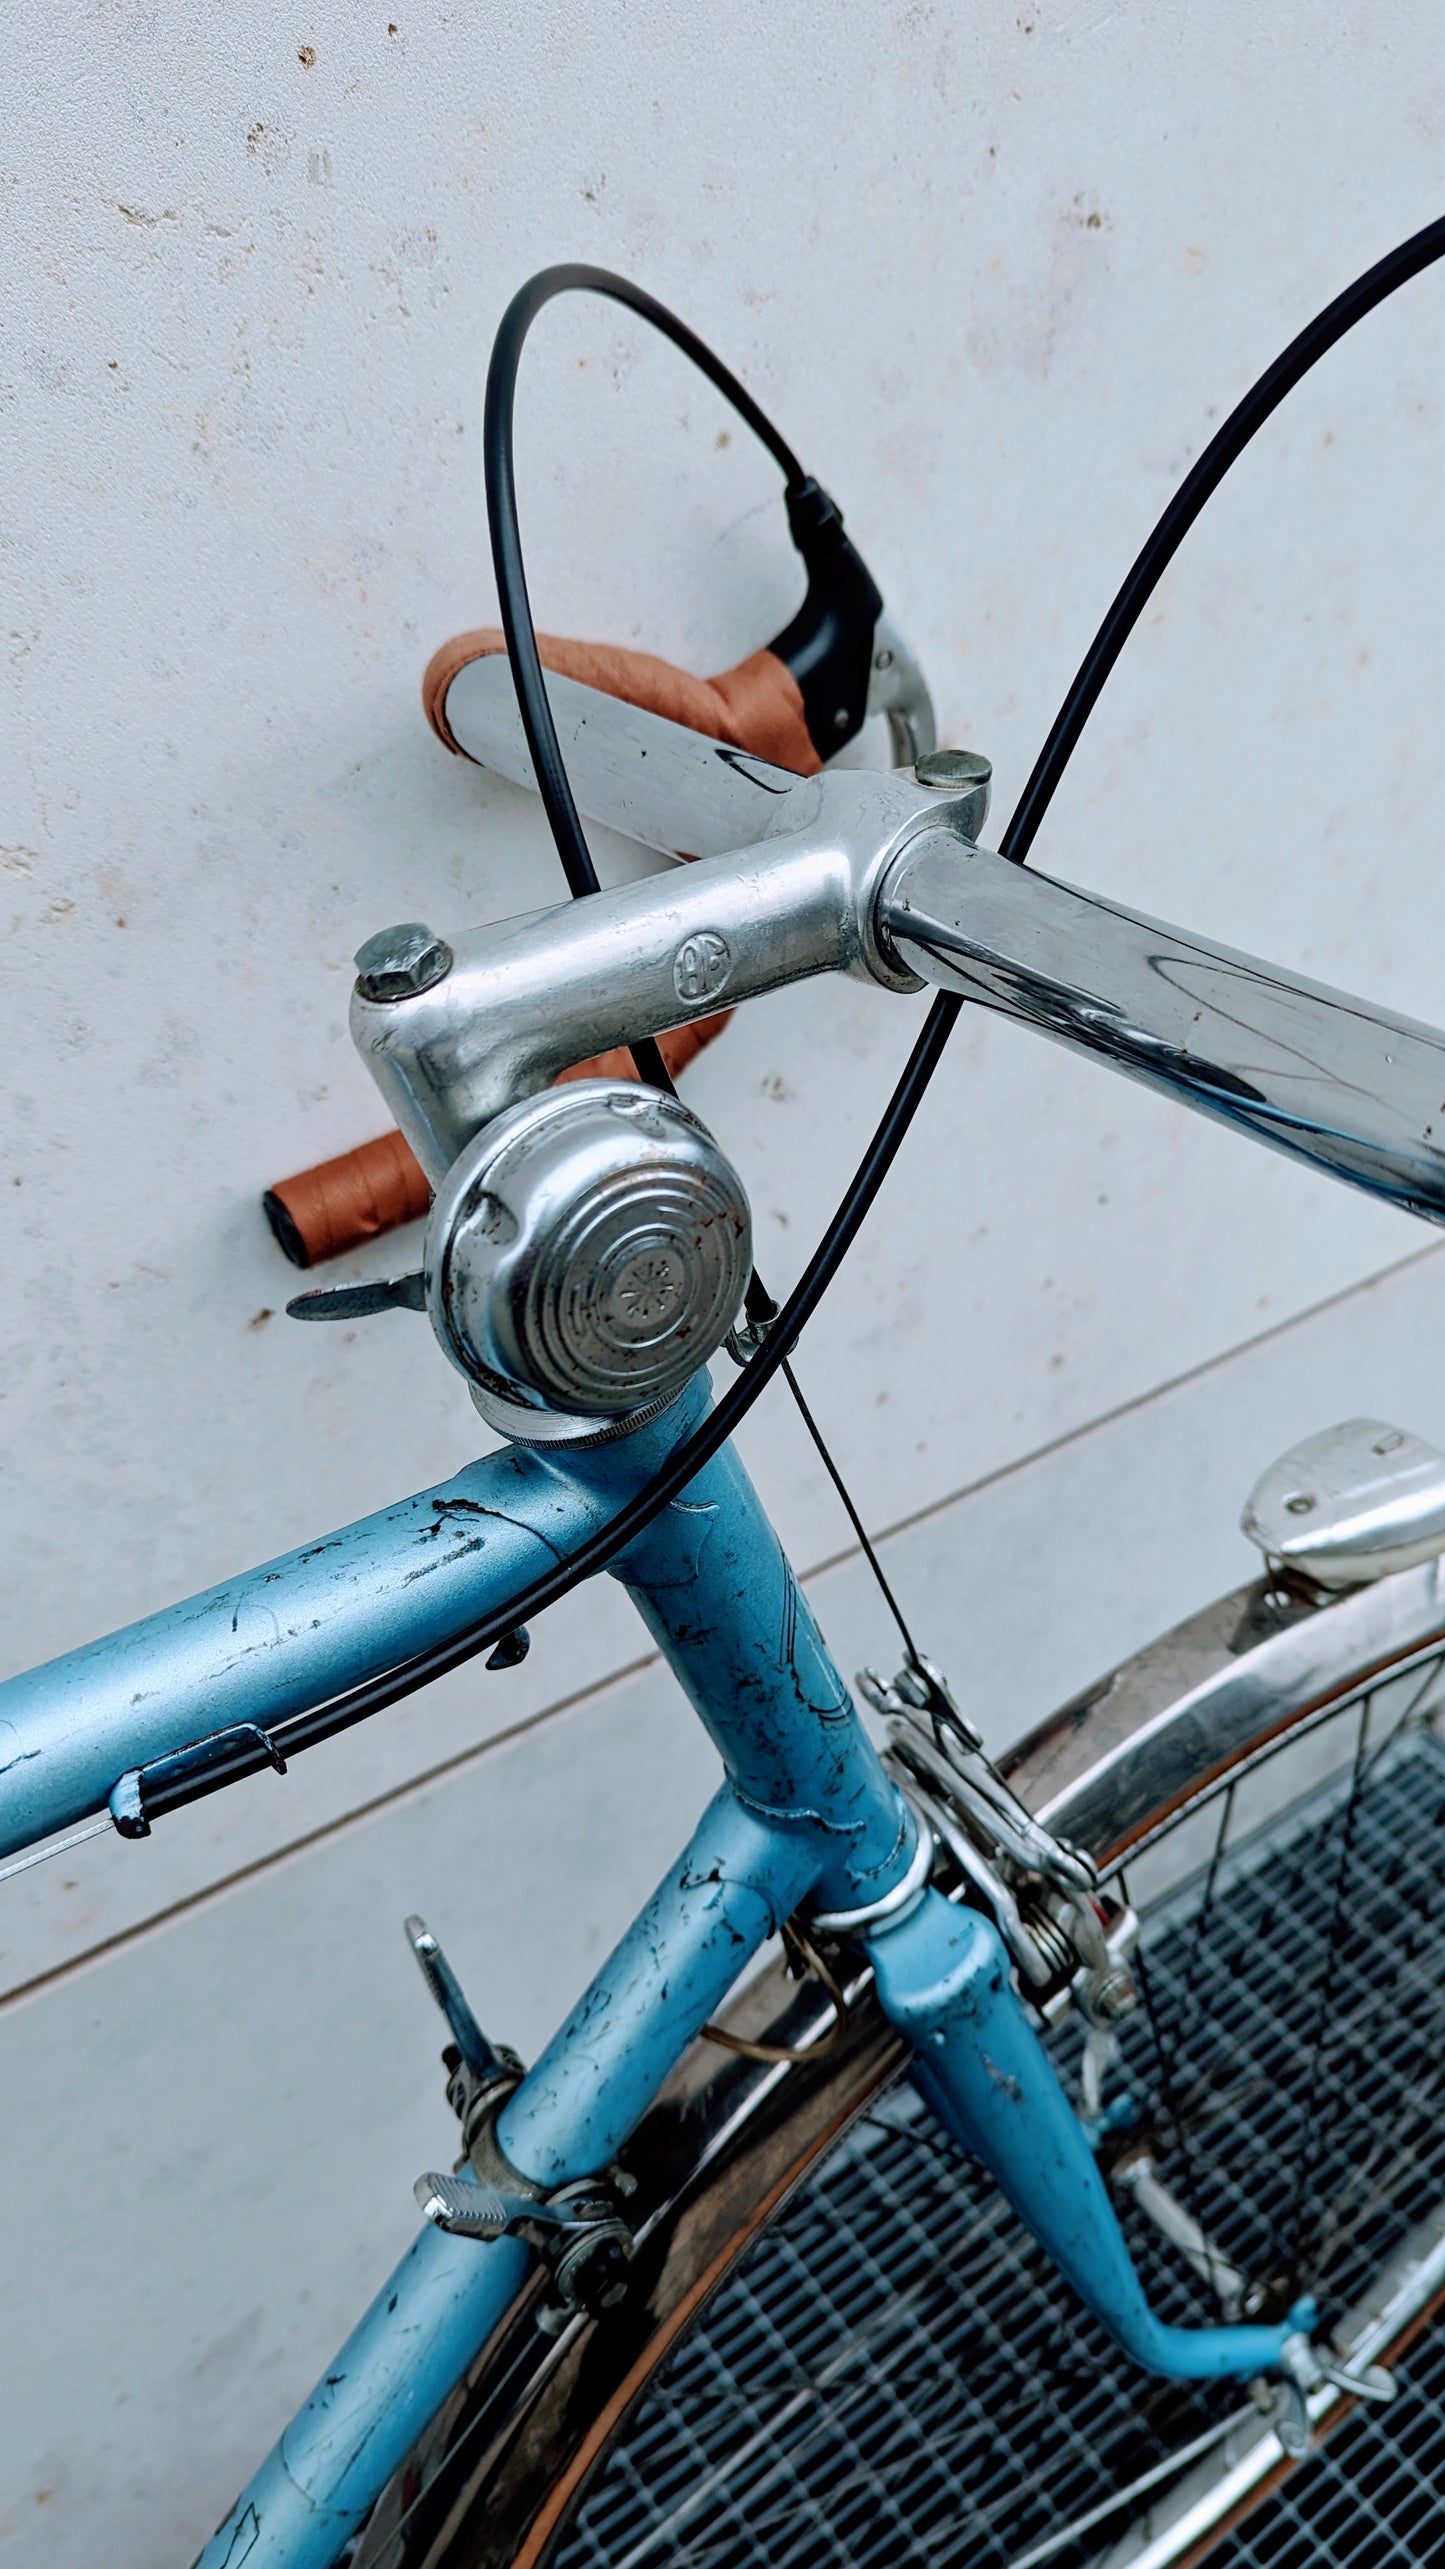 Vintage Franch Bike SIP 2000